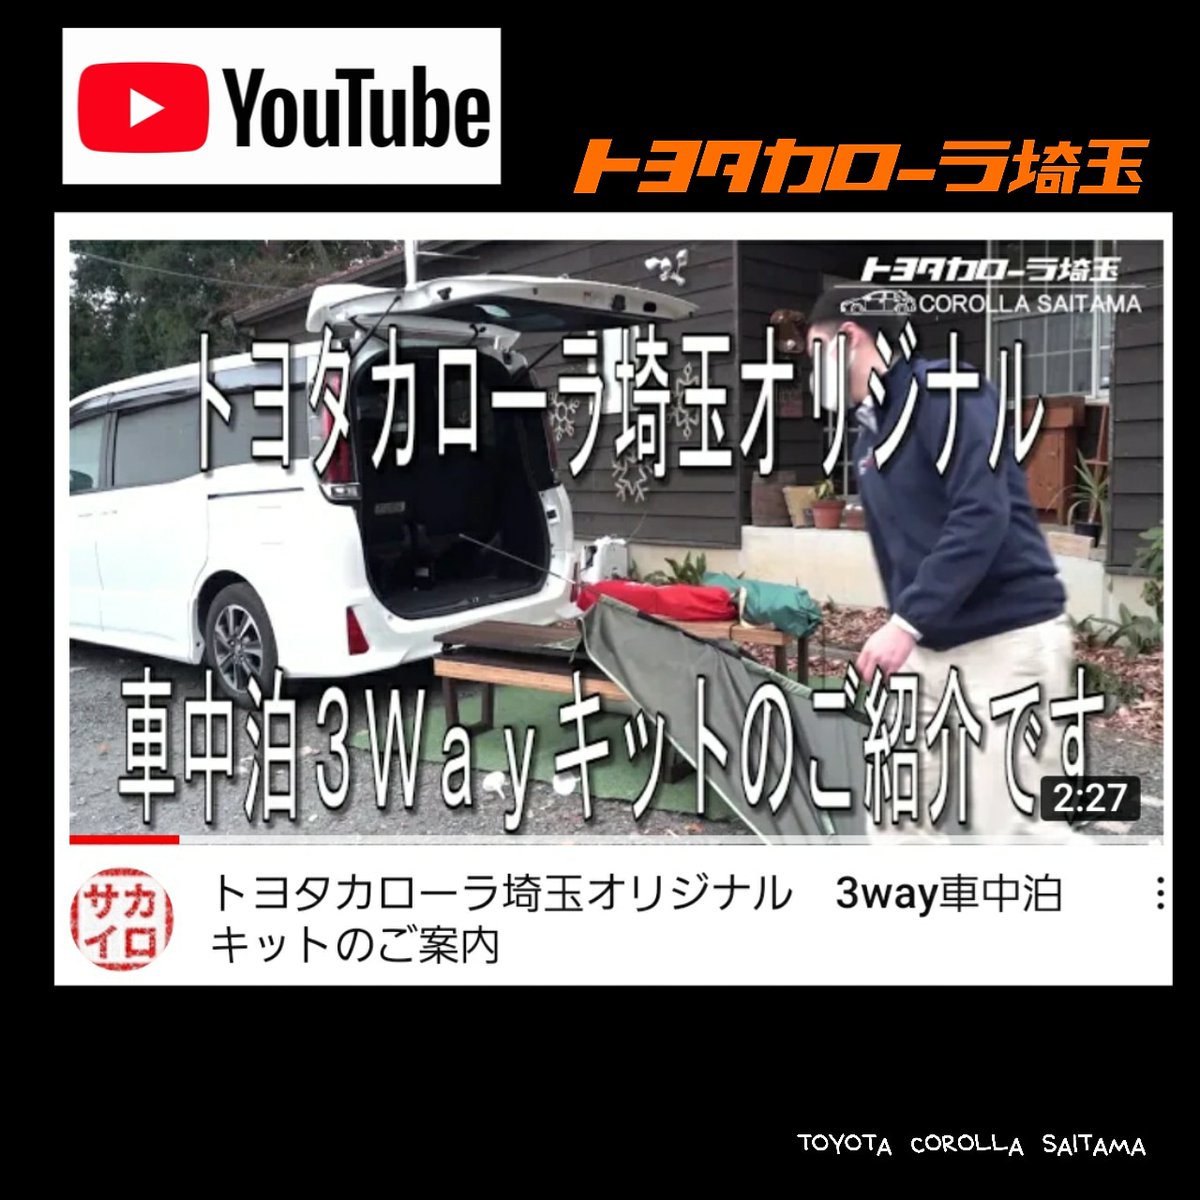 Toyota Corolla Saitama イベント トヨタカローラ埼玉 公式youtube カローラ埼玉オリジナル ノア専用車中泊キット 3wayチェア をご紹介します T Co 4bvpjvltfk 詳しくは こちらからご覧ください T Co Vdrv1nujoo トヨタカローラ